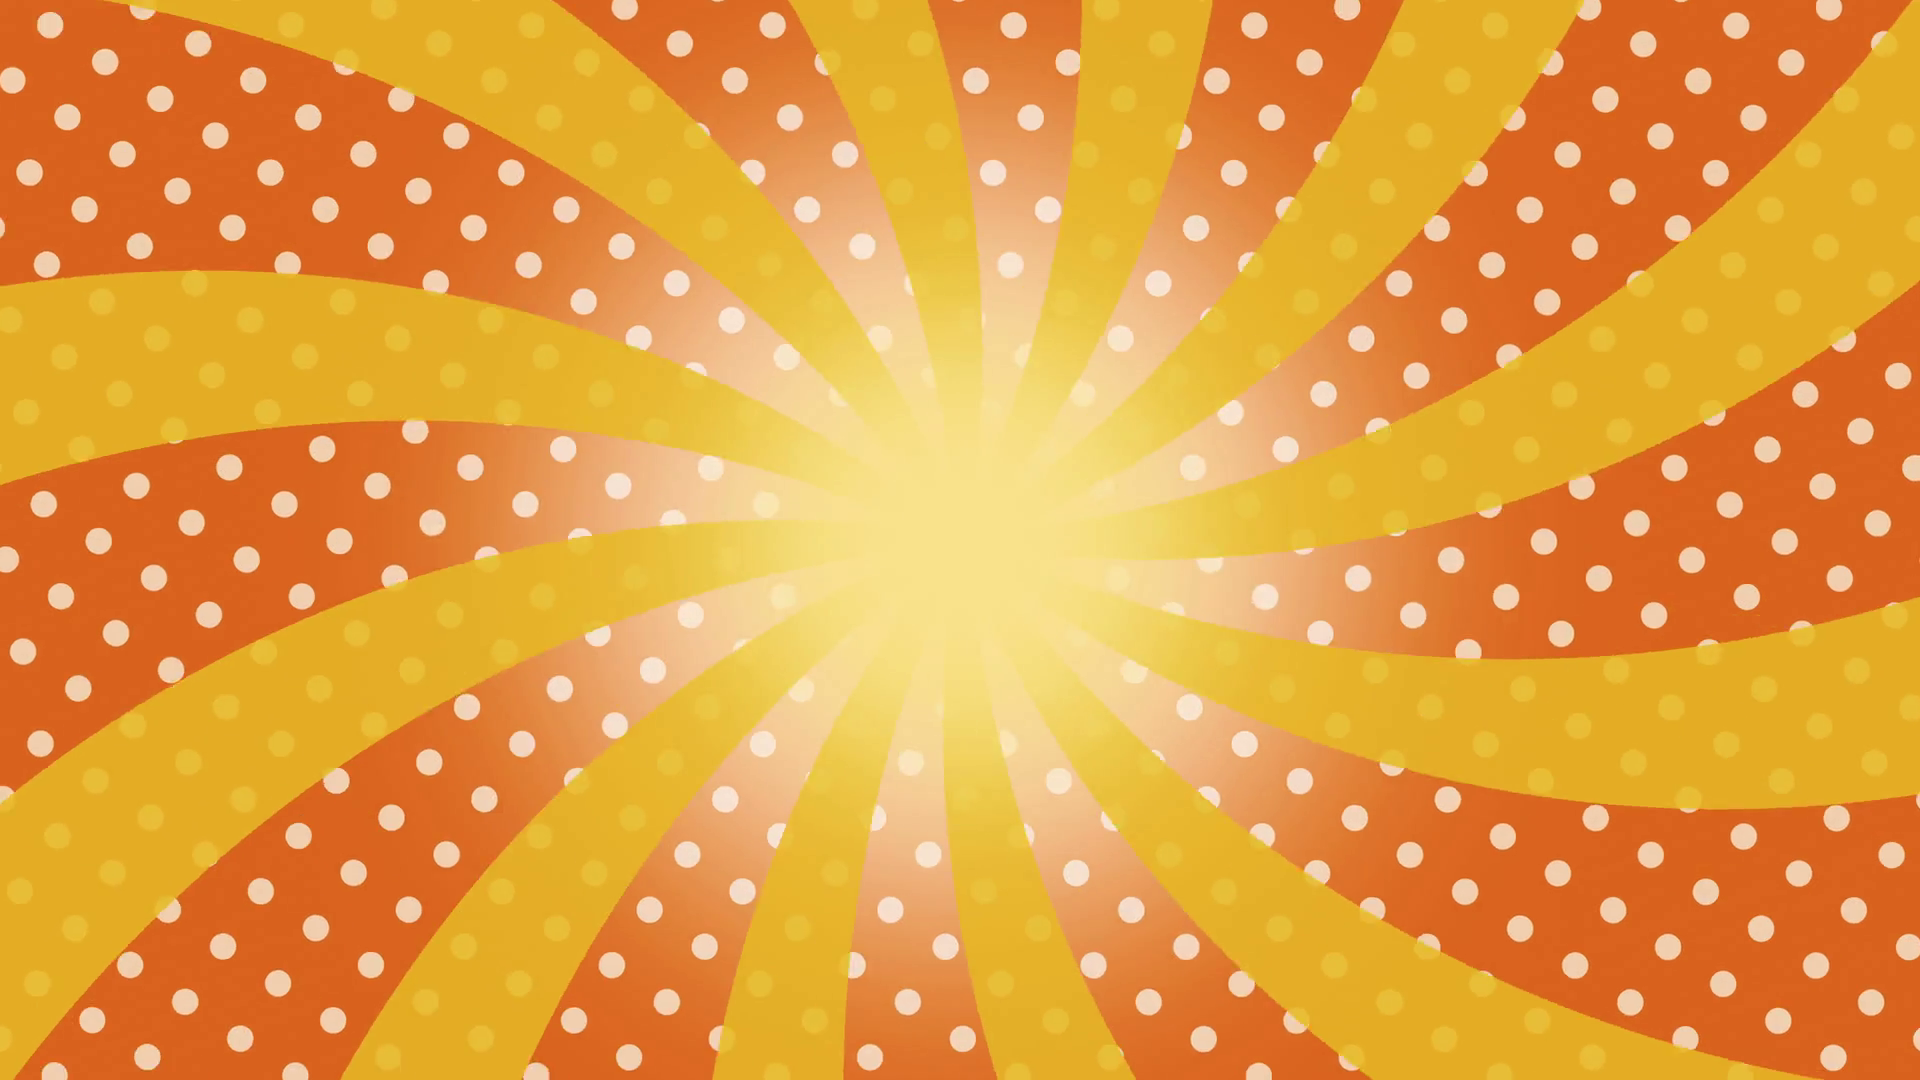 Yellow Twisted Sunburst rotating over orange background With white ...